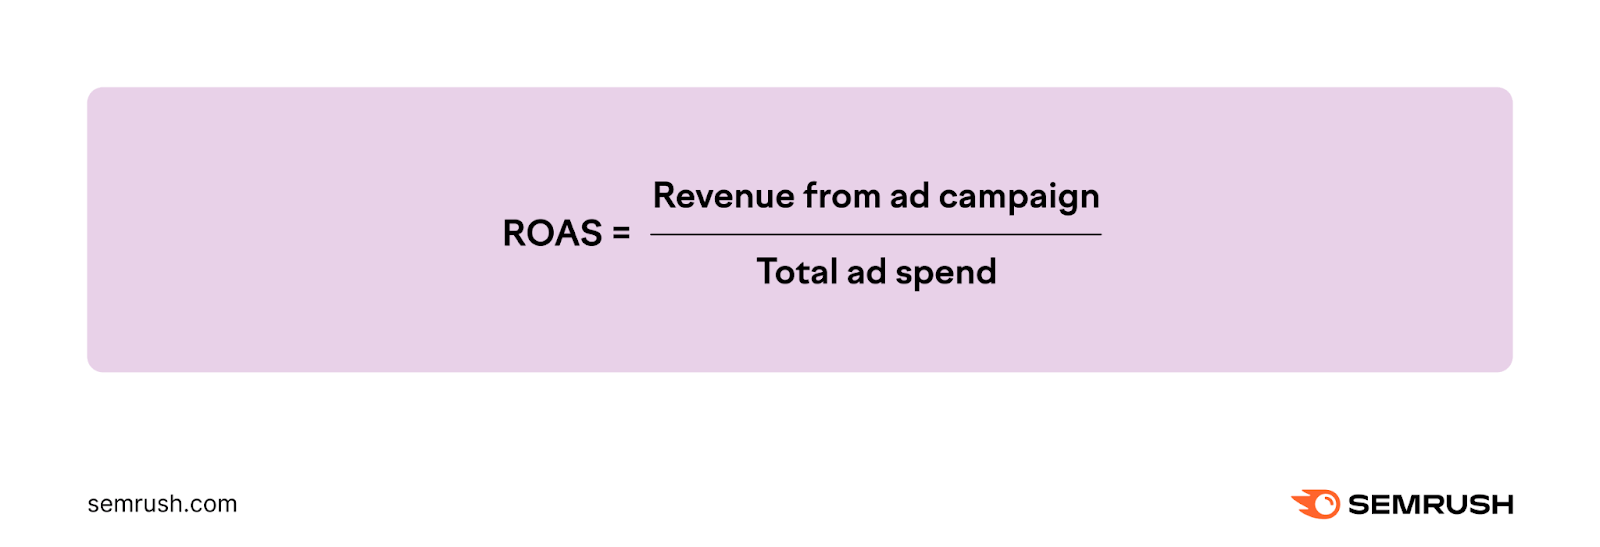 Return on ad spend formula